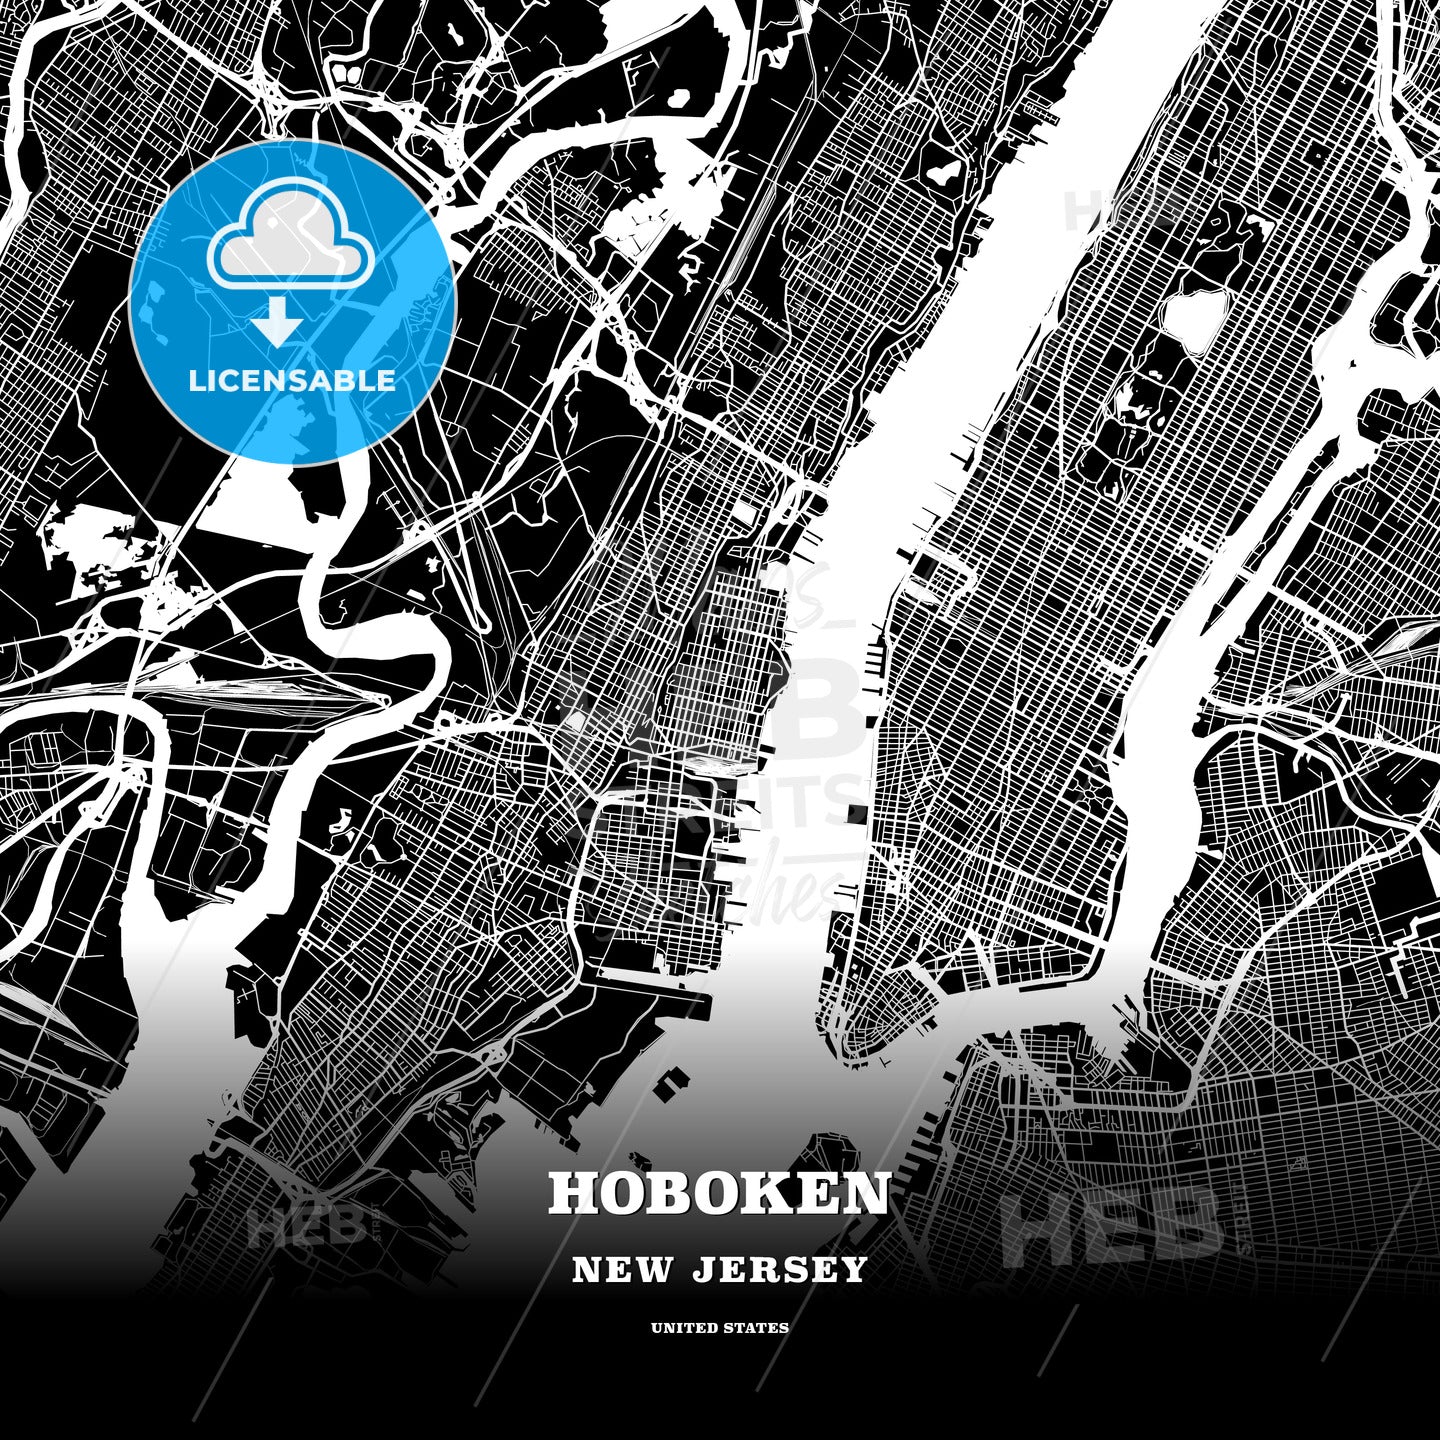 Hoboken, New Jersey, USA map